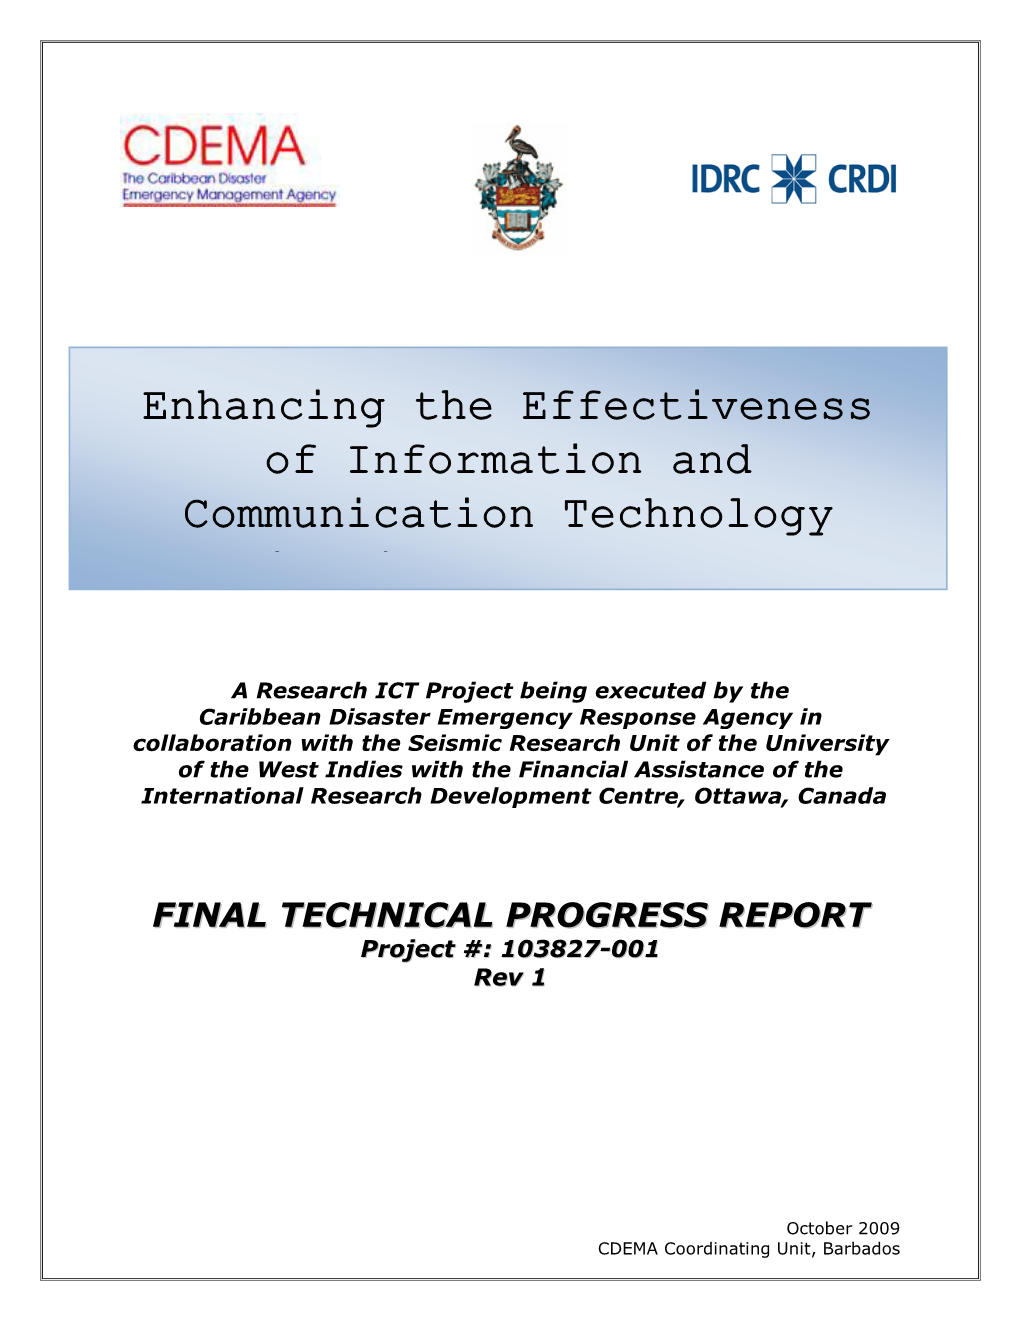 1St IDRC Progress Report